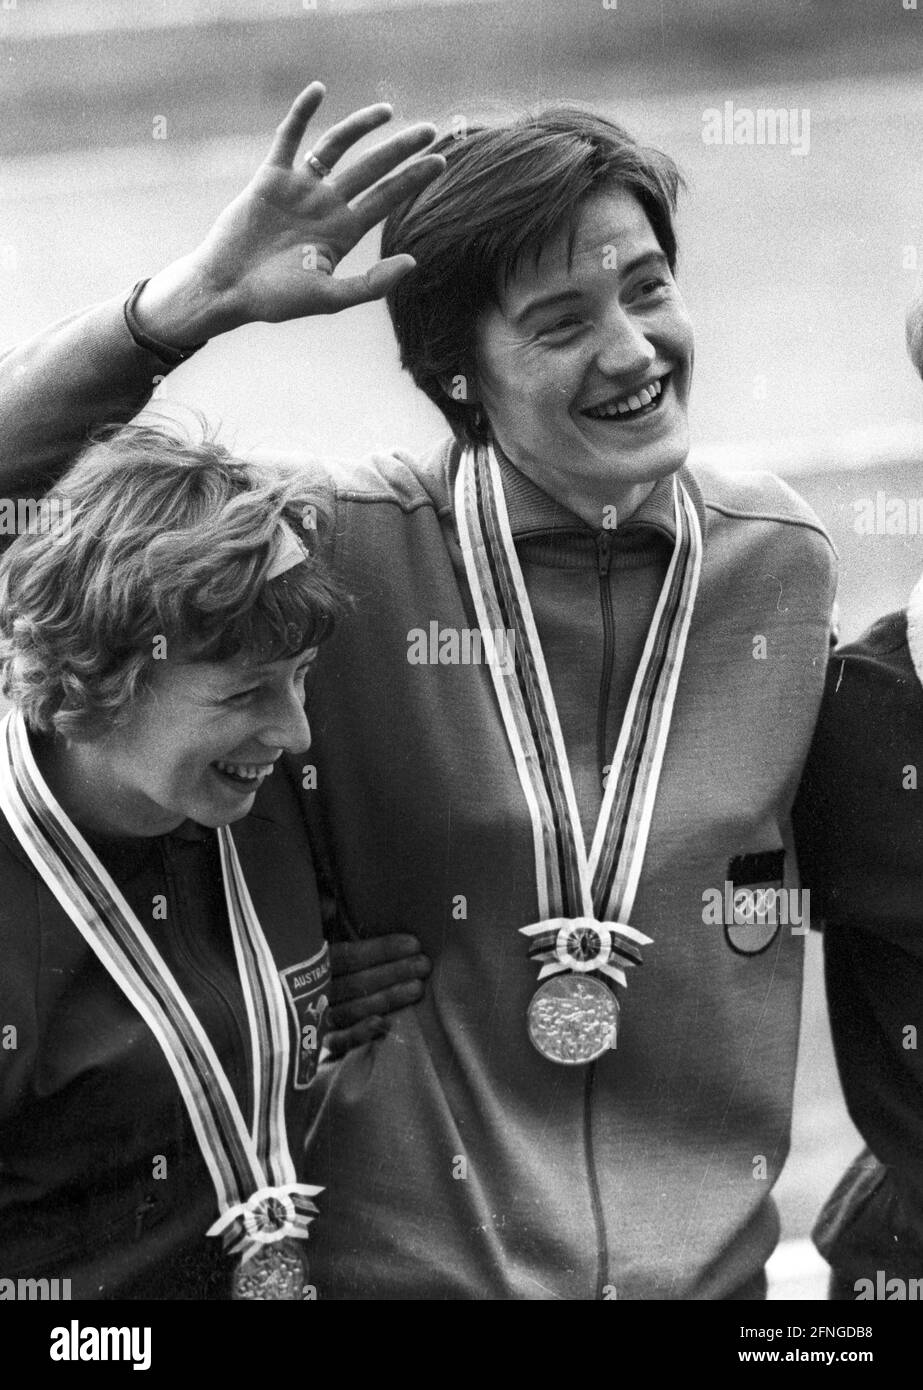 Jeux olympiques d'été à Tokyo 1964. Athlétisme : cérémonie de remise des prix de 80m haies. Karin Balzer (équipe allemande/GDR) avec la médaille d'or. À gauche : Pamela Kilborn (Australie/Bronze).Aufn. 20.10.1964. [traduction automatique] Banque D'Images